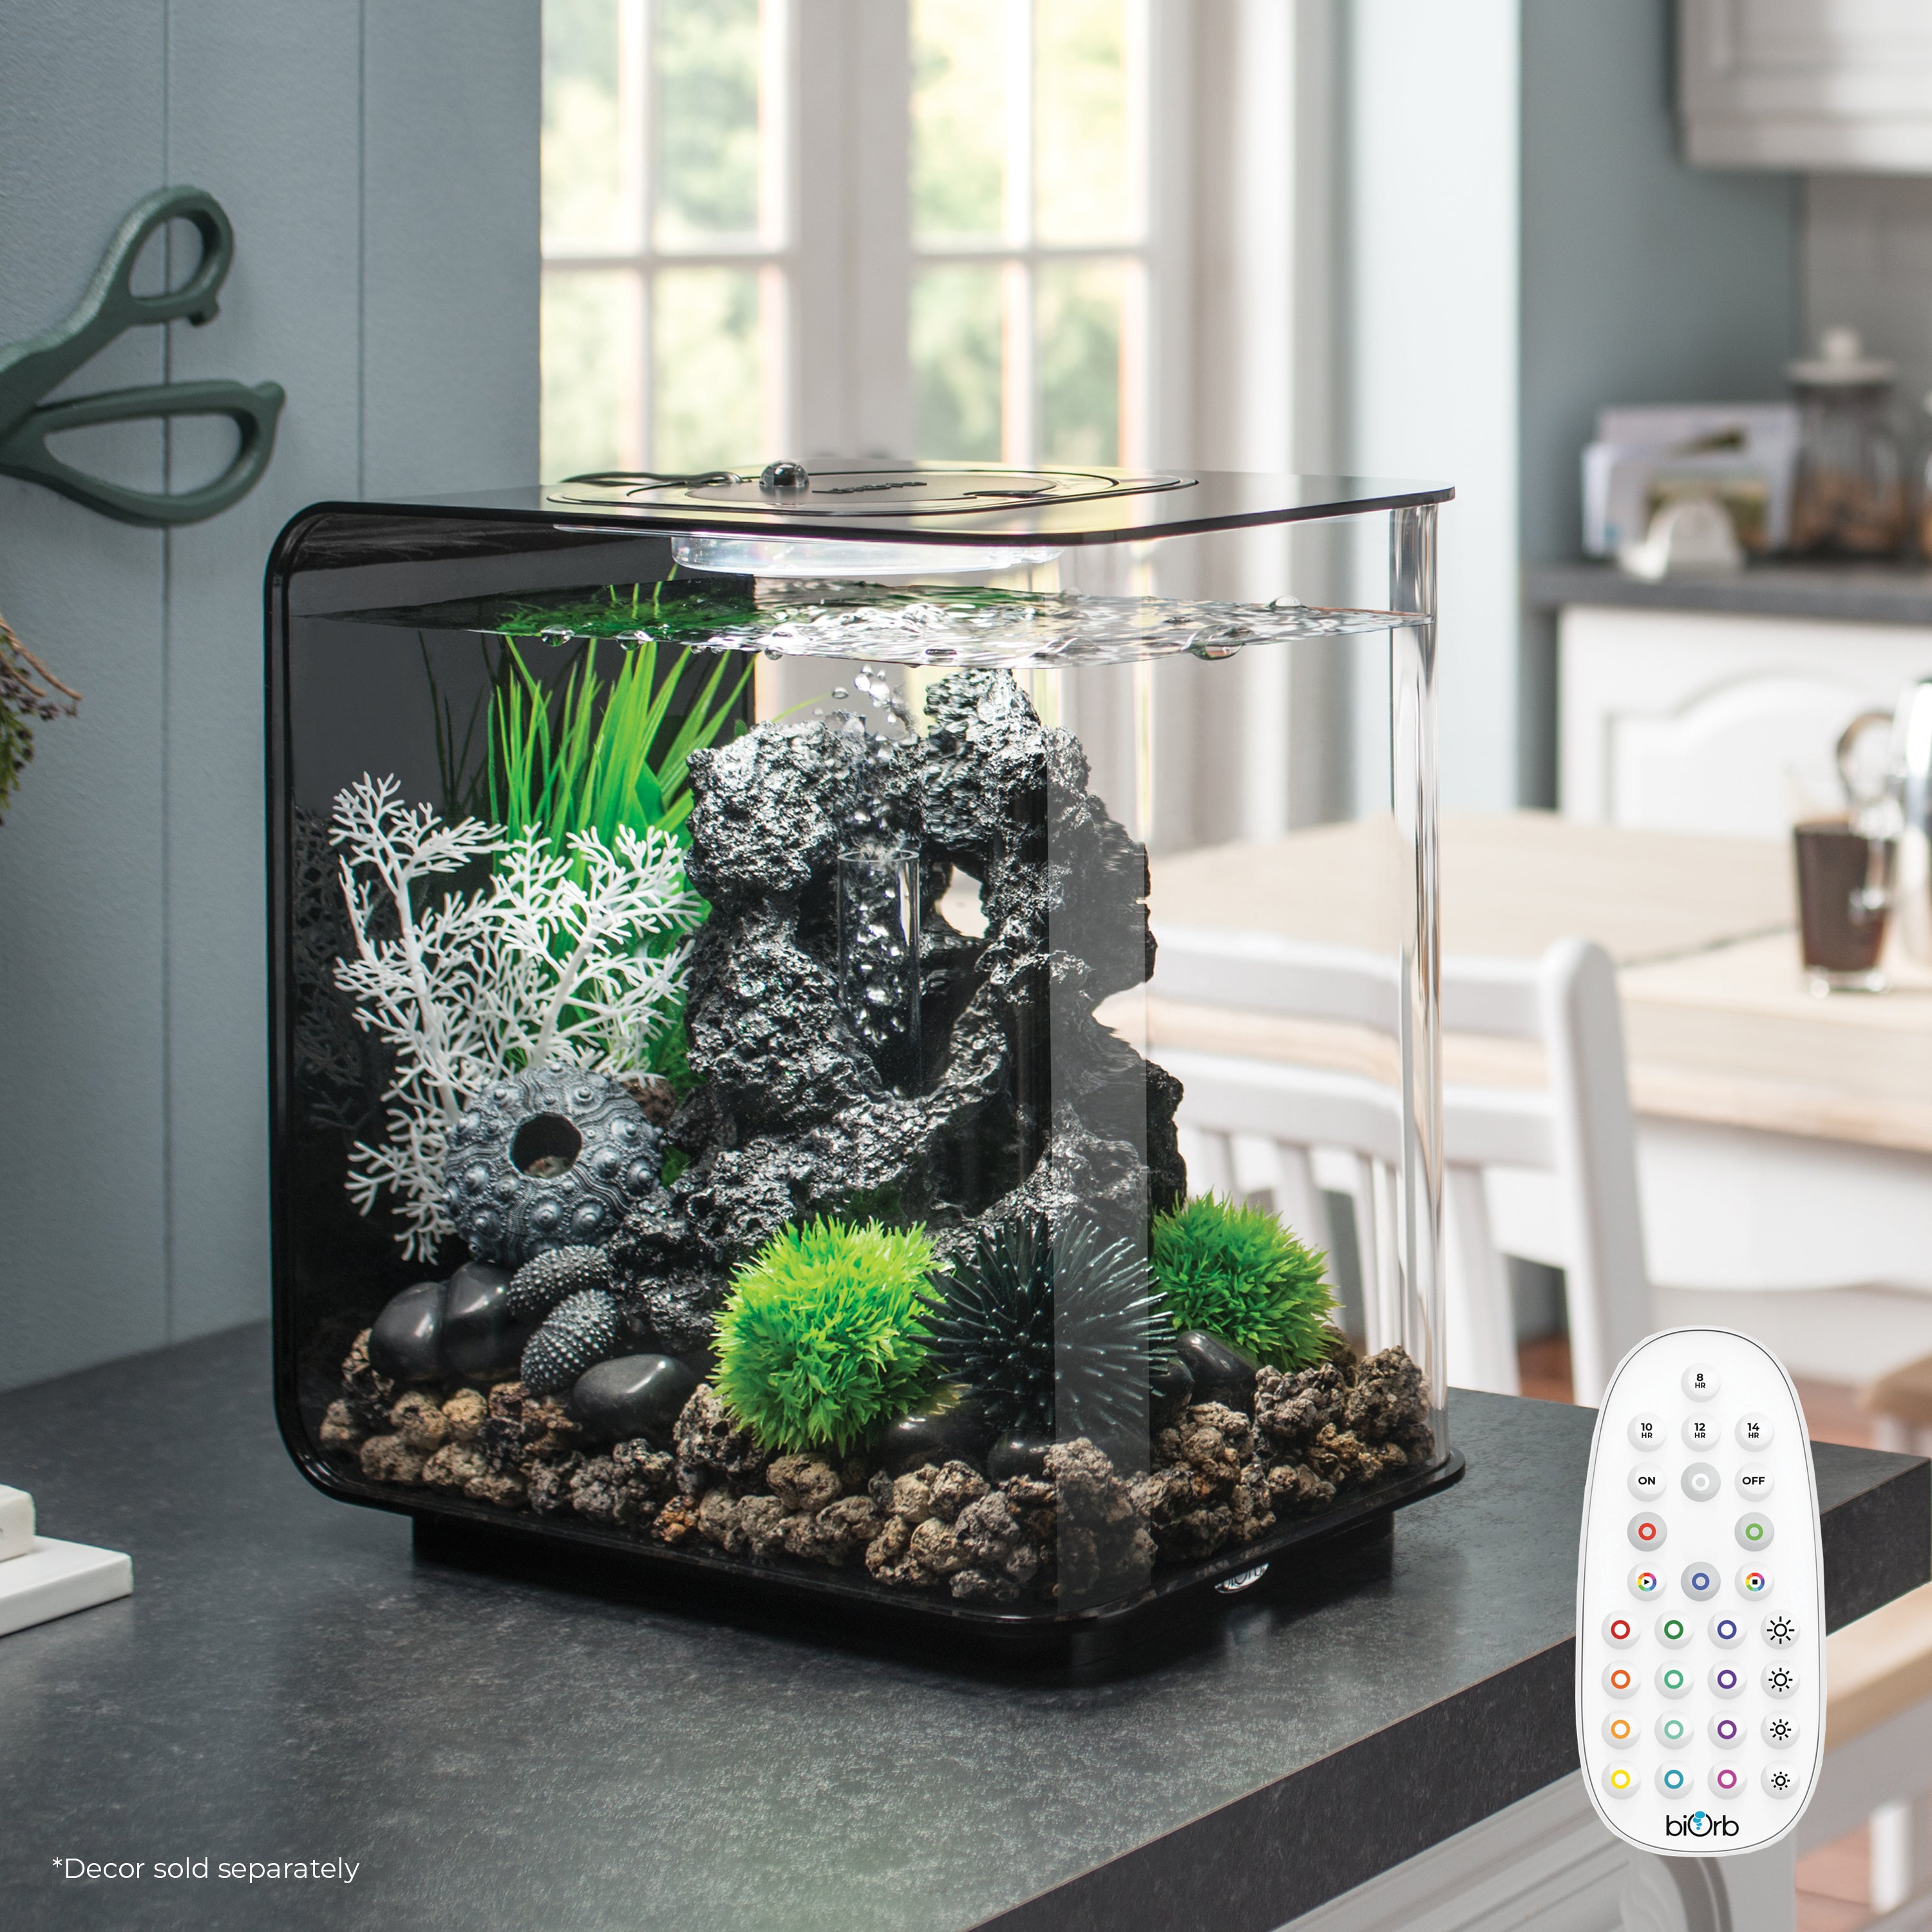 Get inspiration for your aquarium FLOW 15 Aquarium with MCR Light - 4 gallon available in black